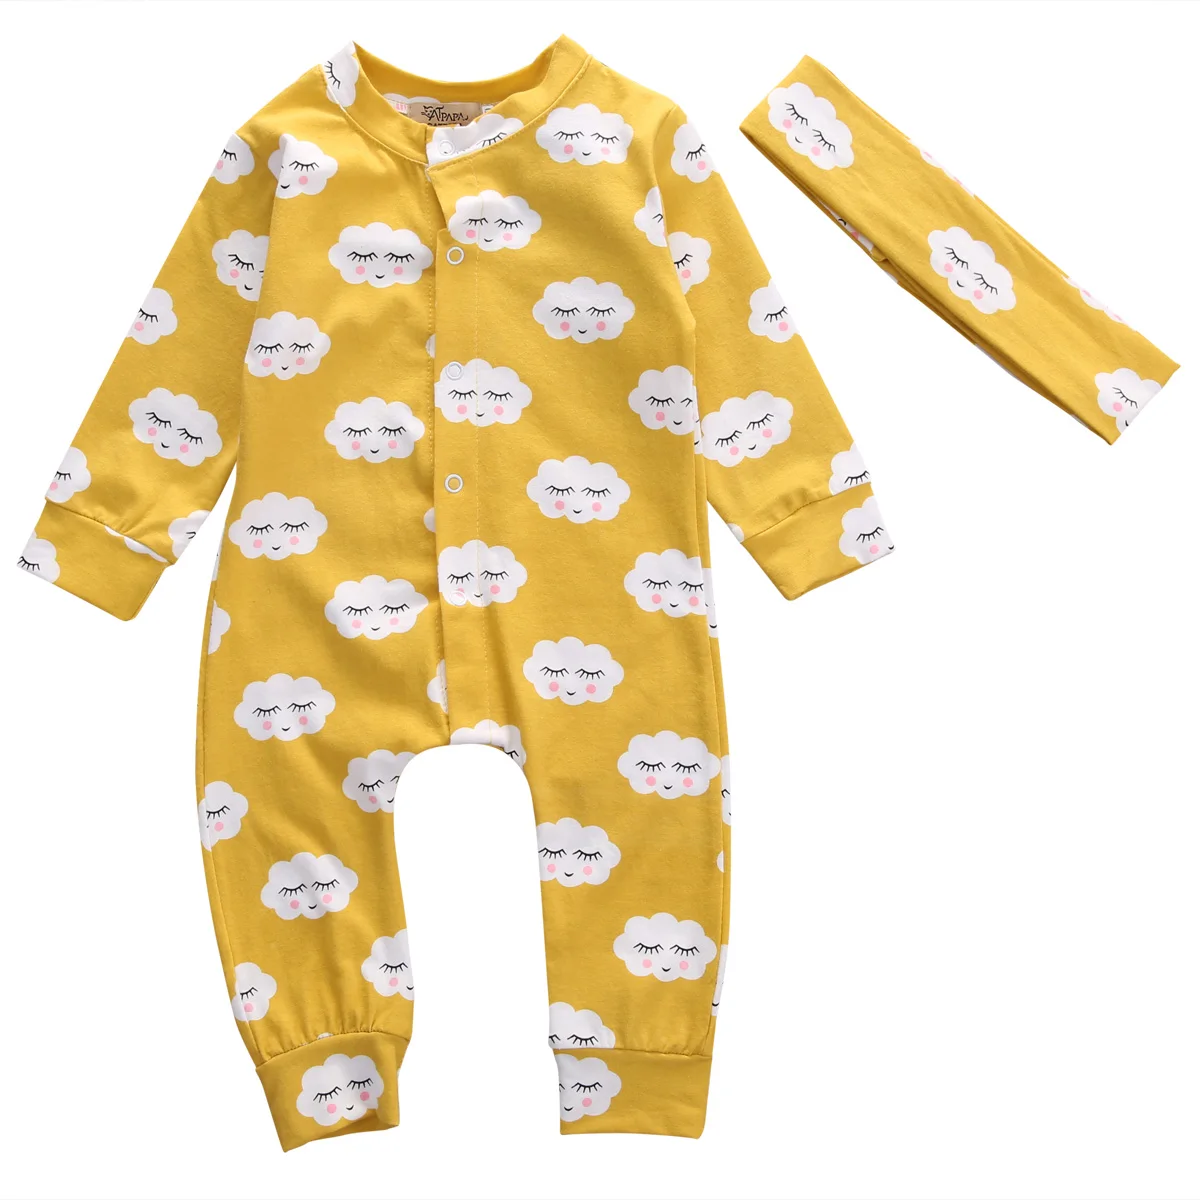 

Newborn Infant Baby Girl Boy Long Sleeve Cloud Print Romper Jumpsuit Outfits Sunsuit Clothes Size 0-18M